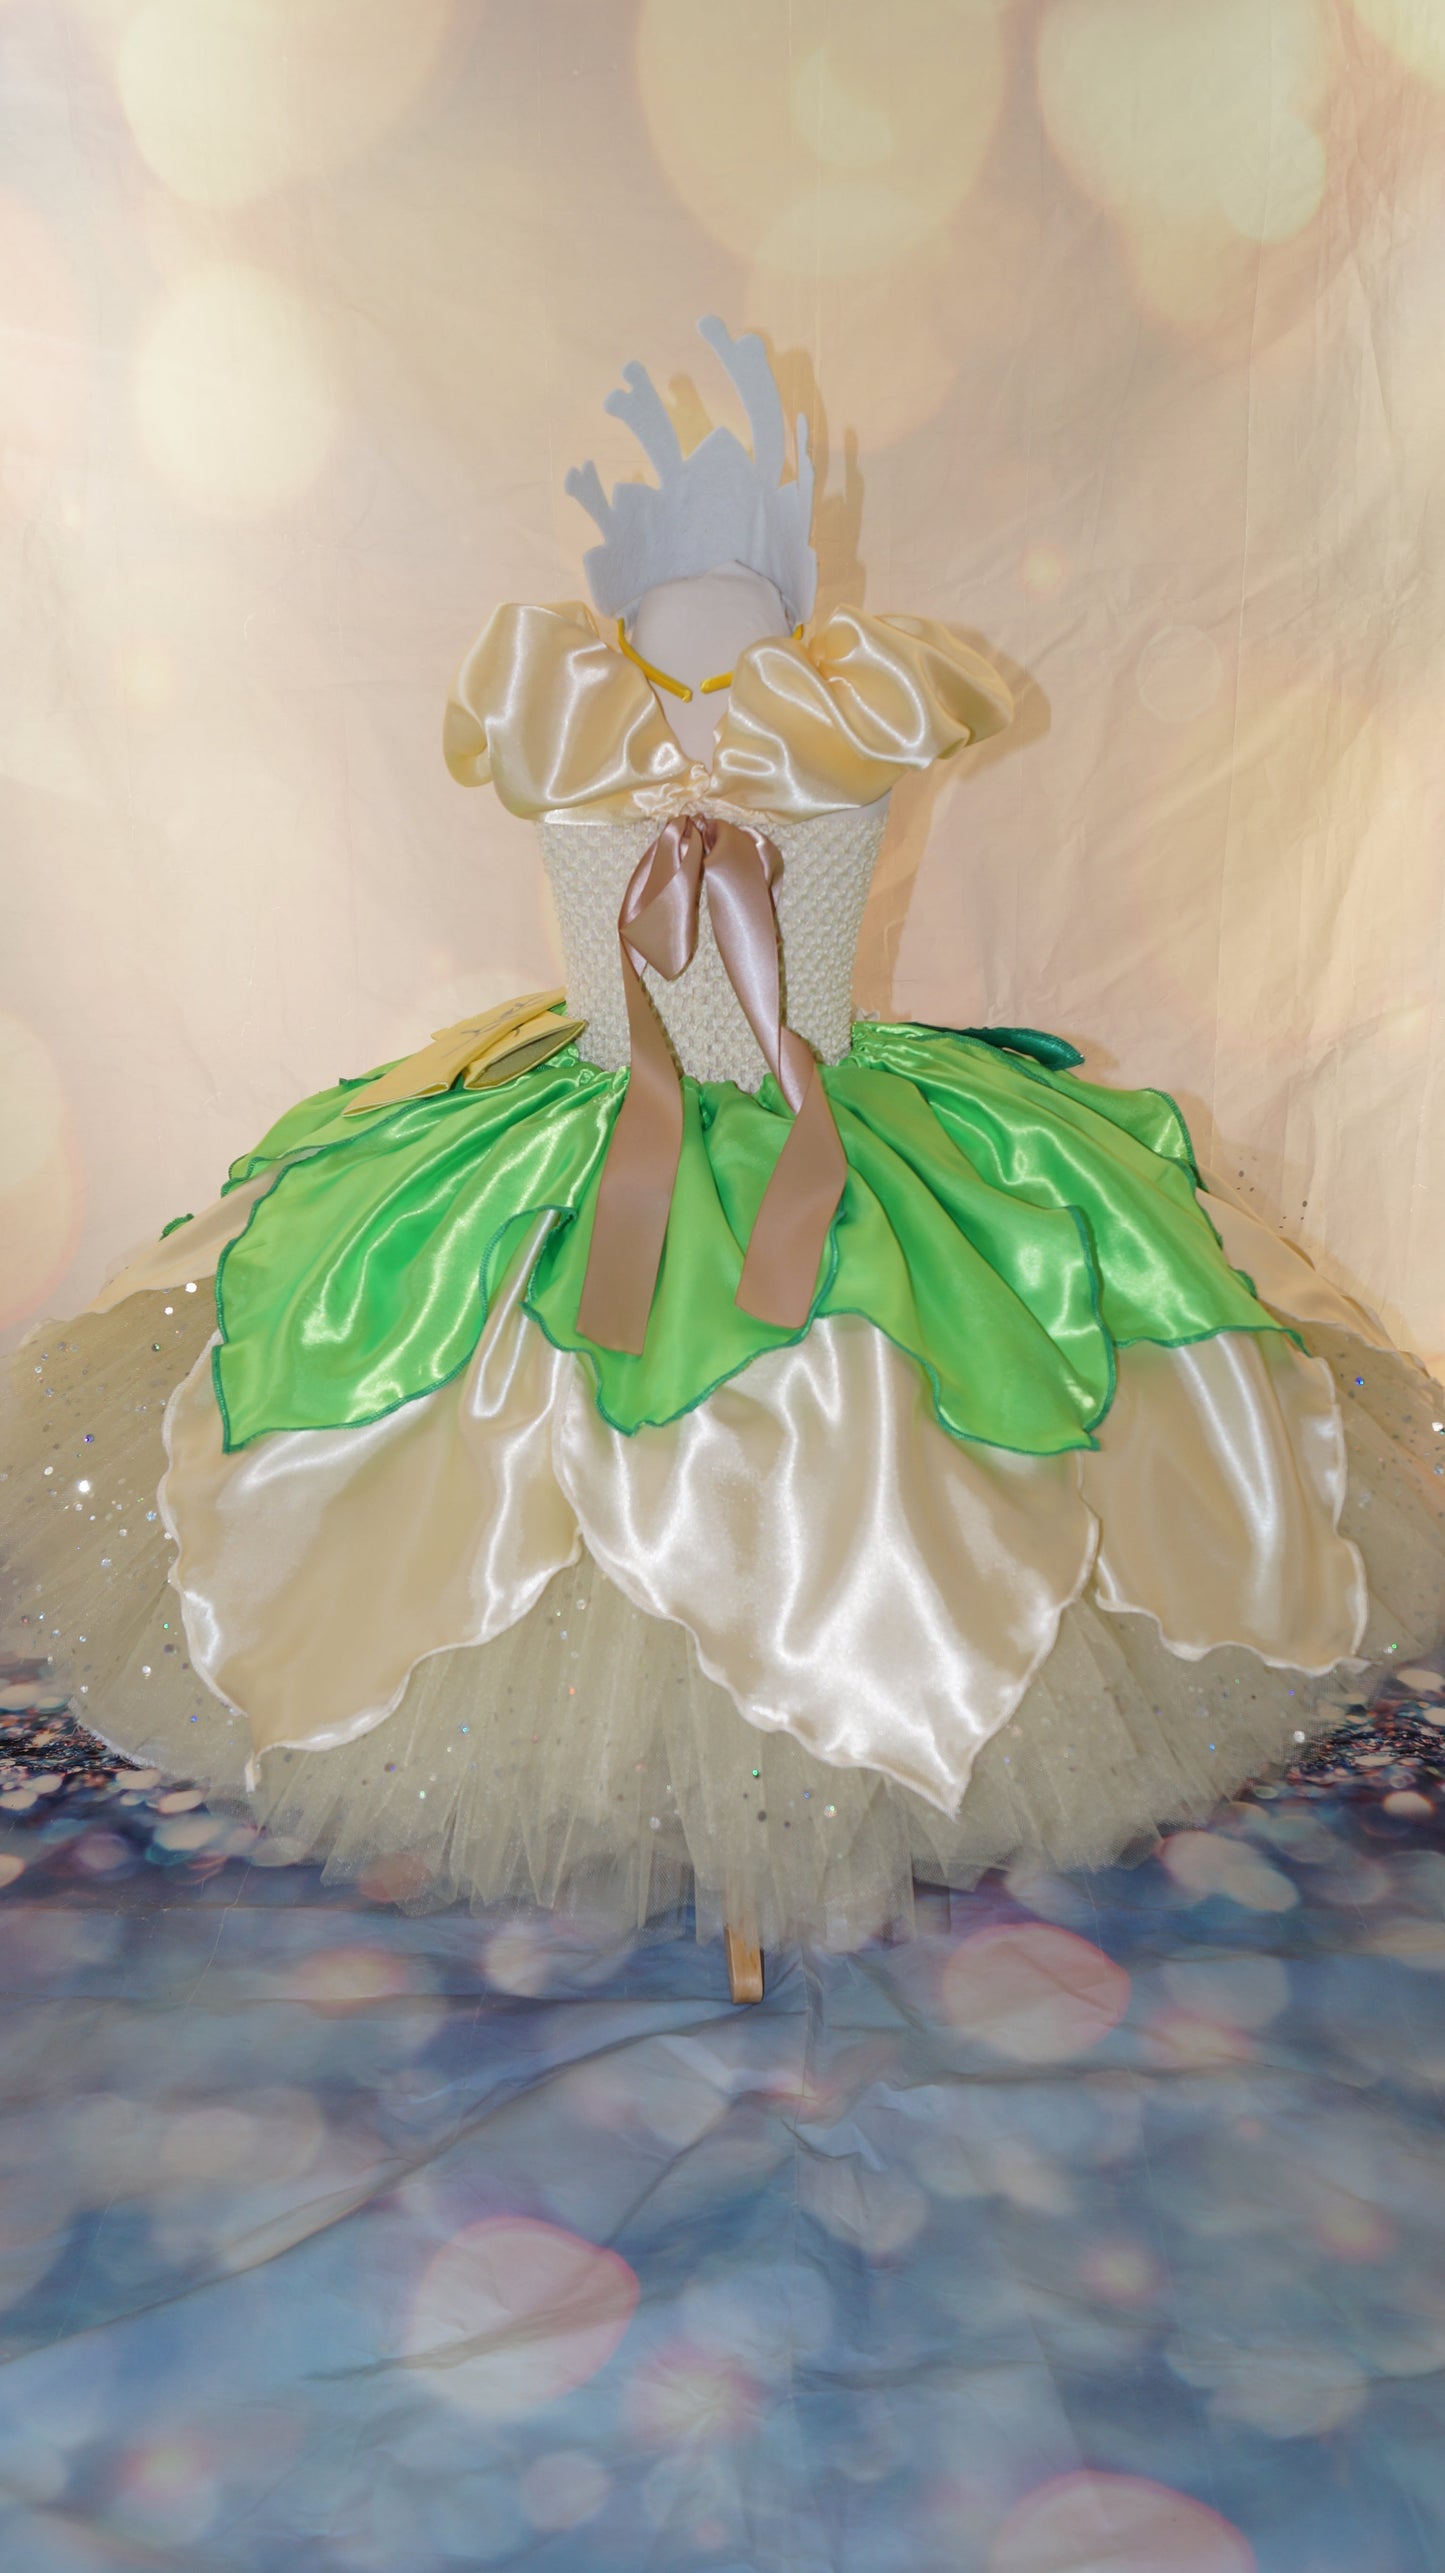 Disney Princess Tiana The Princess and the Frog Inspired Tutu Dress